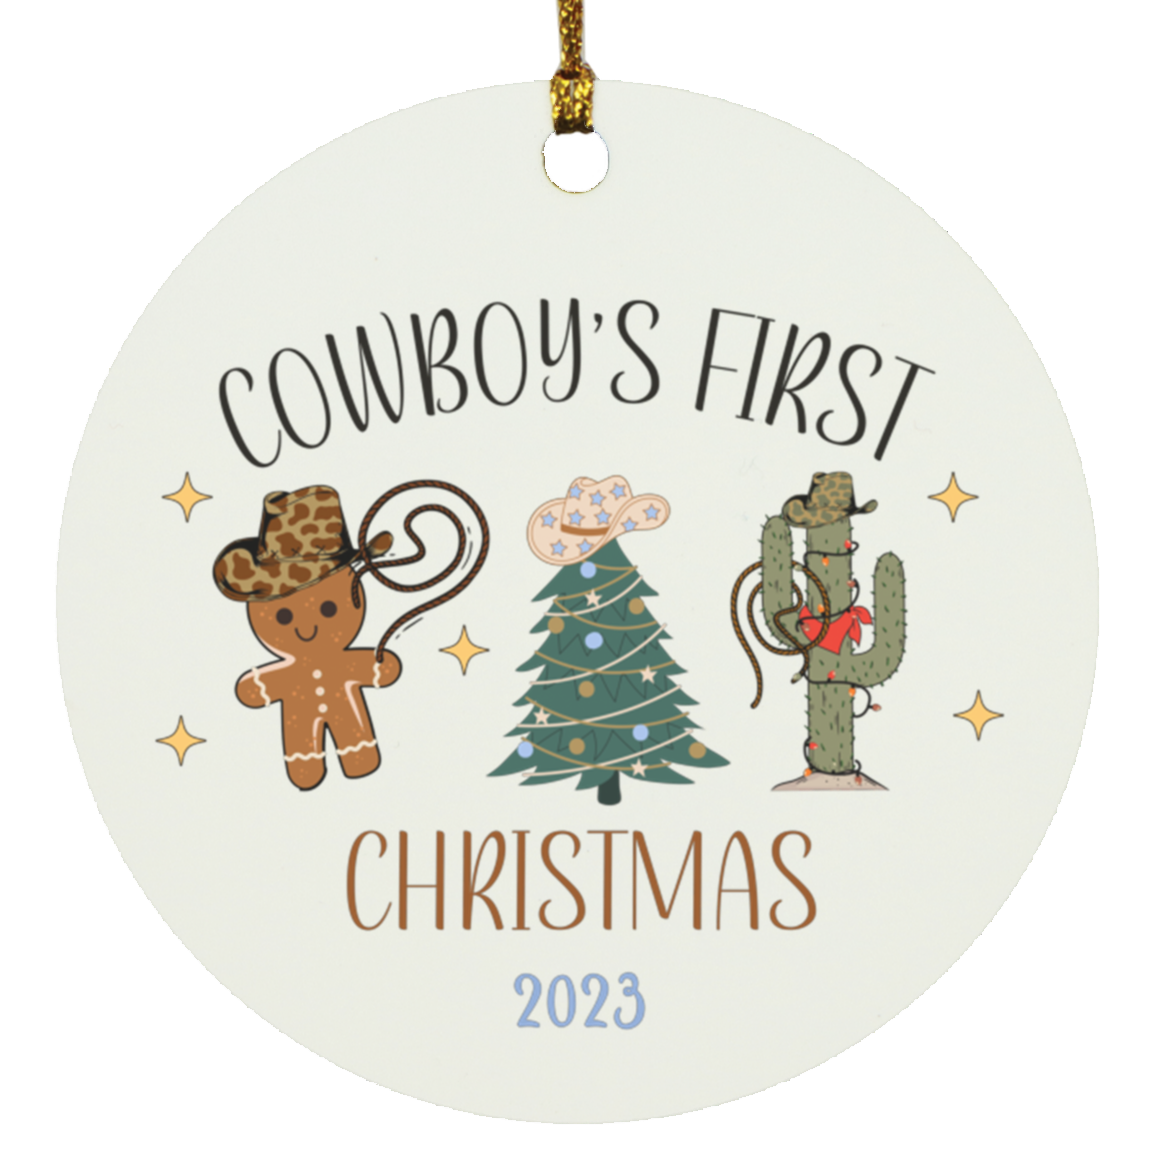 Primera Navidad del vaquero (2023)- Adorno circular de madera